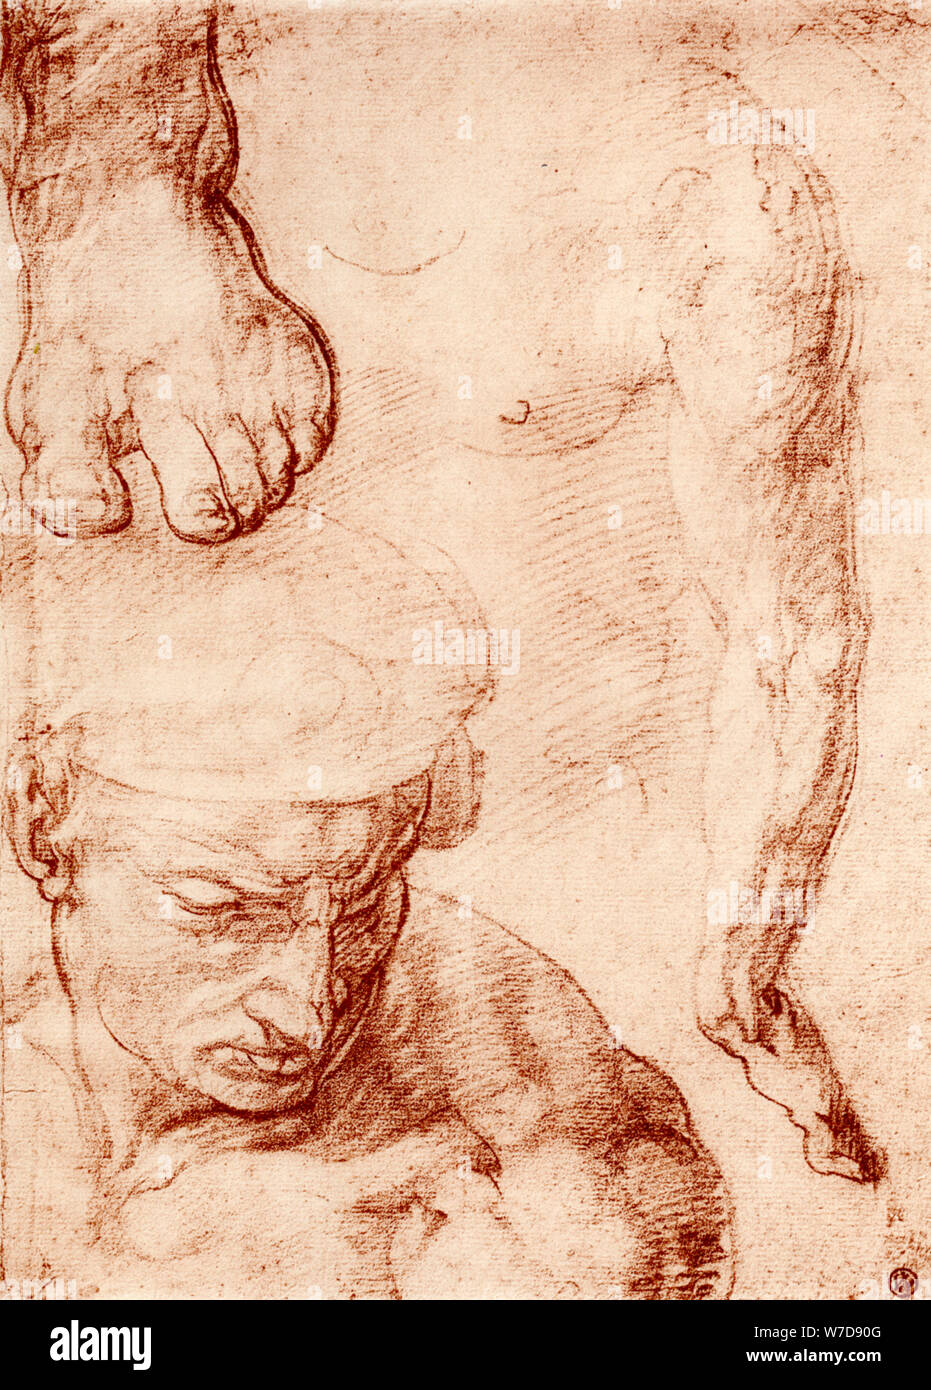 Studi per la figura del cross-bearer in ultima sentenza, Cappella Sistina, Roma, 1913. Artista: Michelangelo Caravaggio Foto Stock